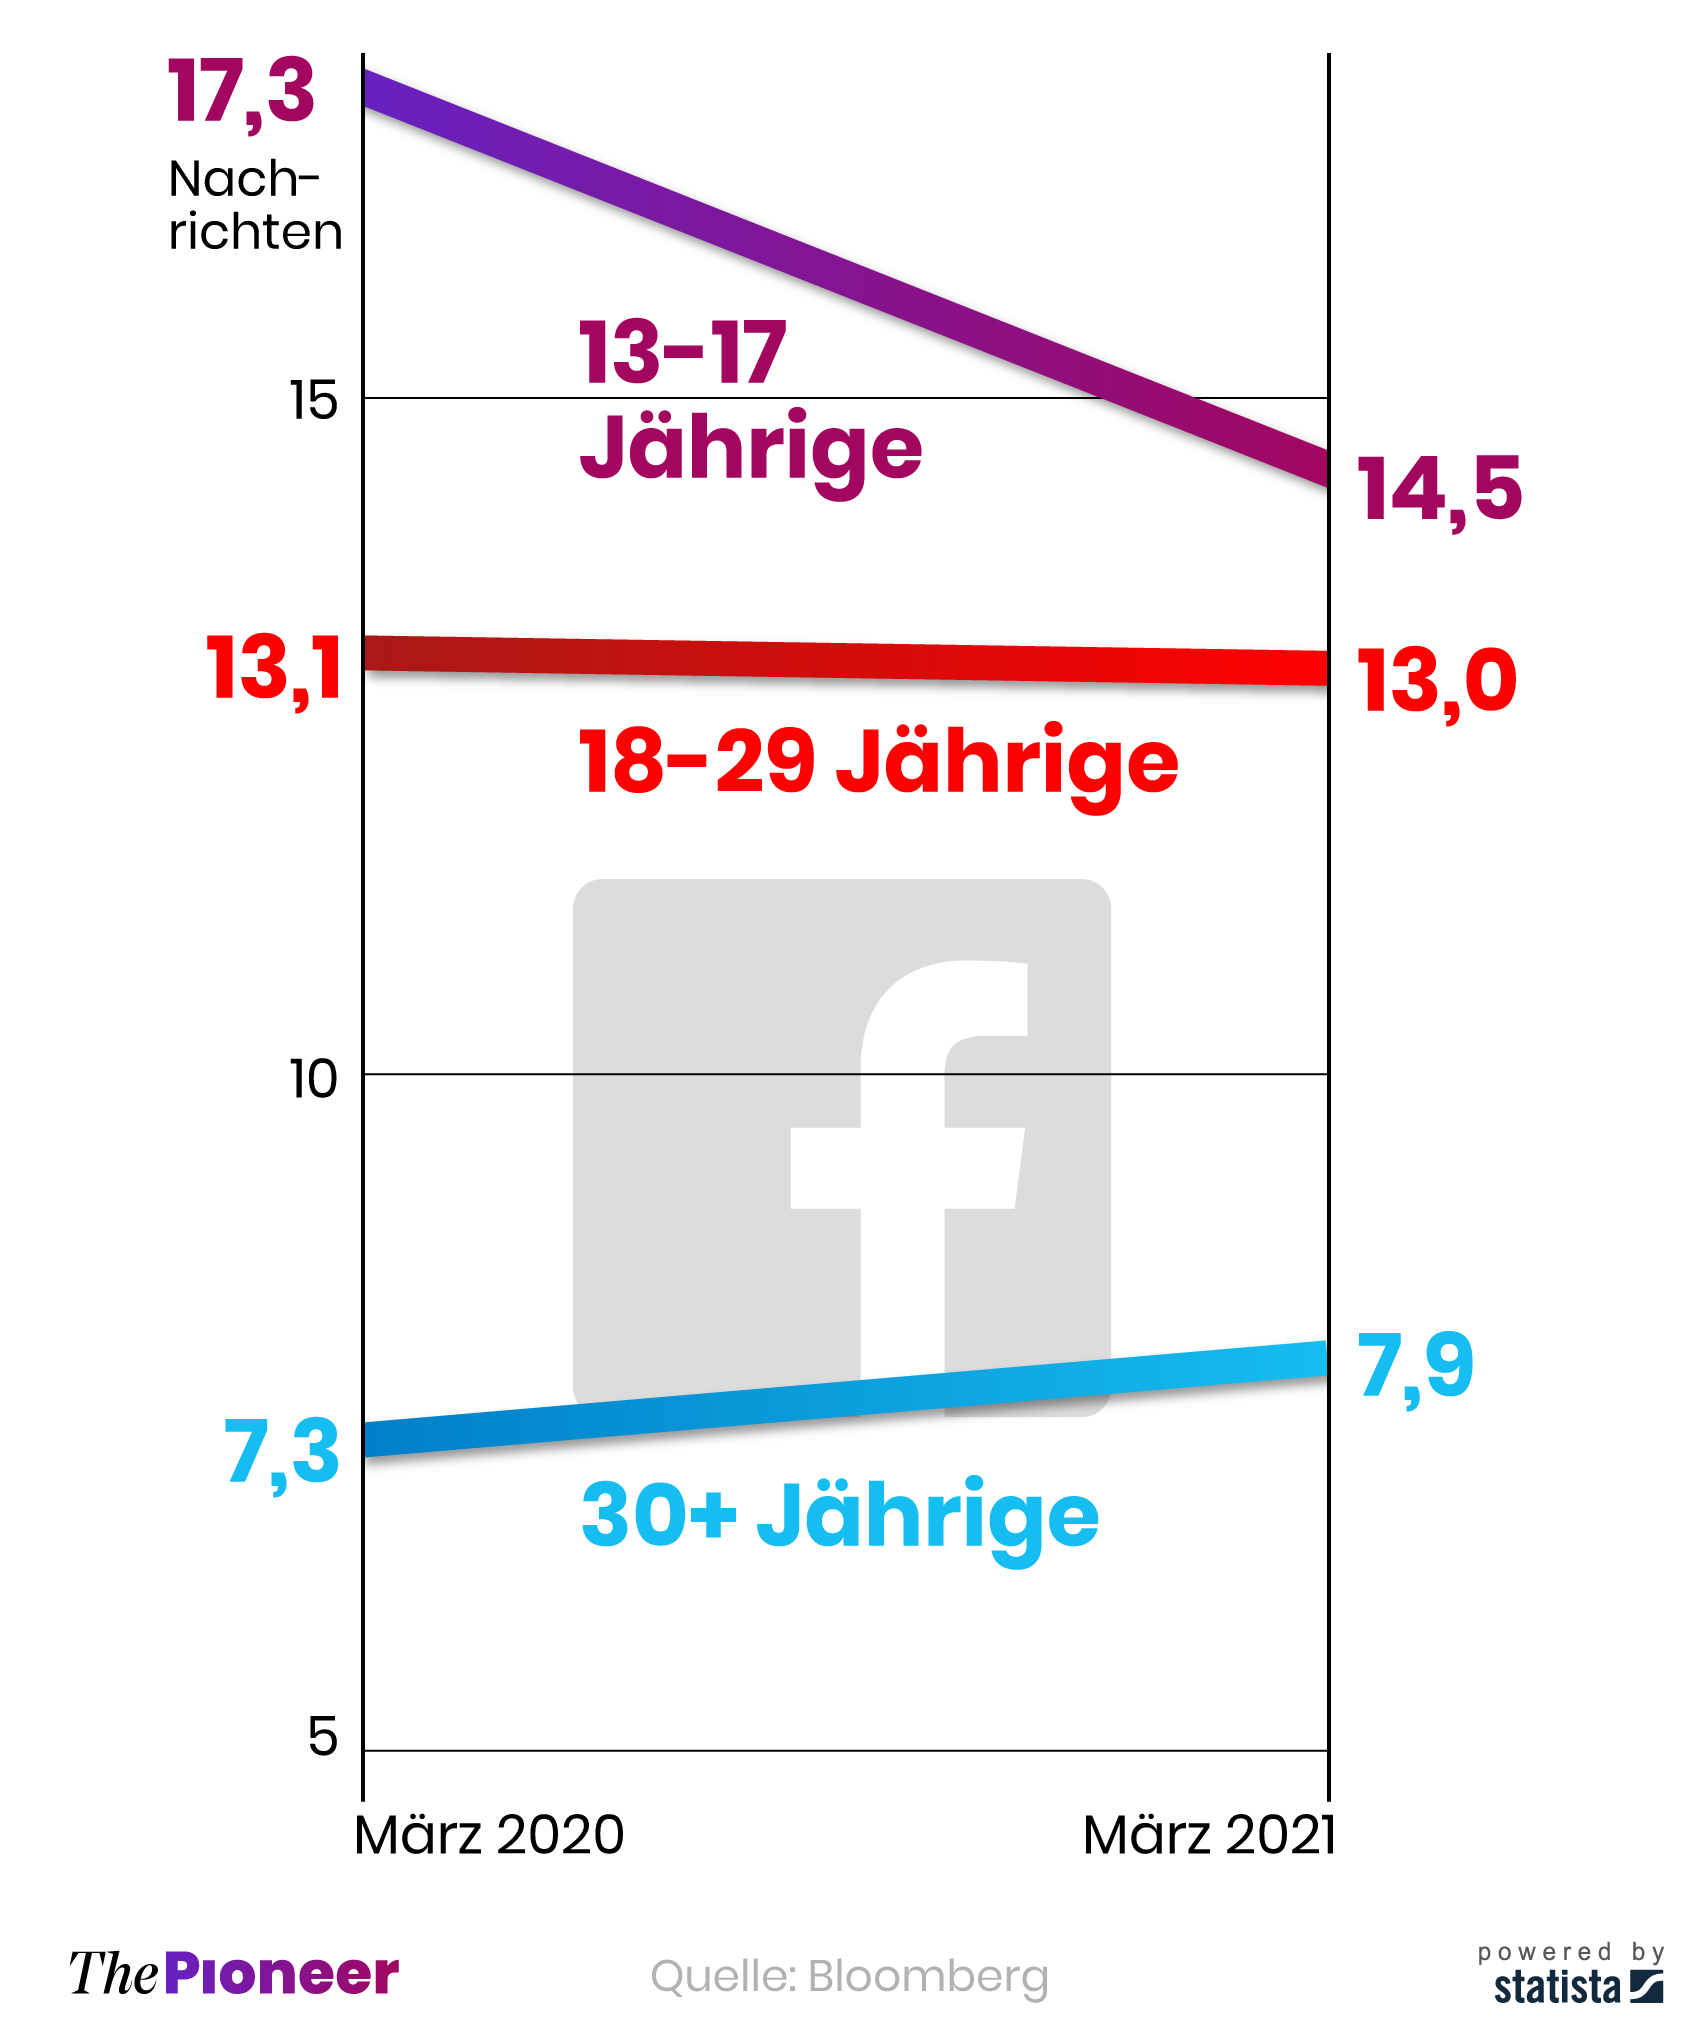 Durchschnittlich täglich verschickte Nachrichten auf Facebook pro aktivem Nutzer, nach Altersgruppen 